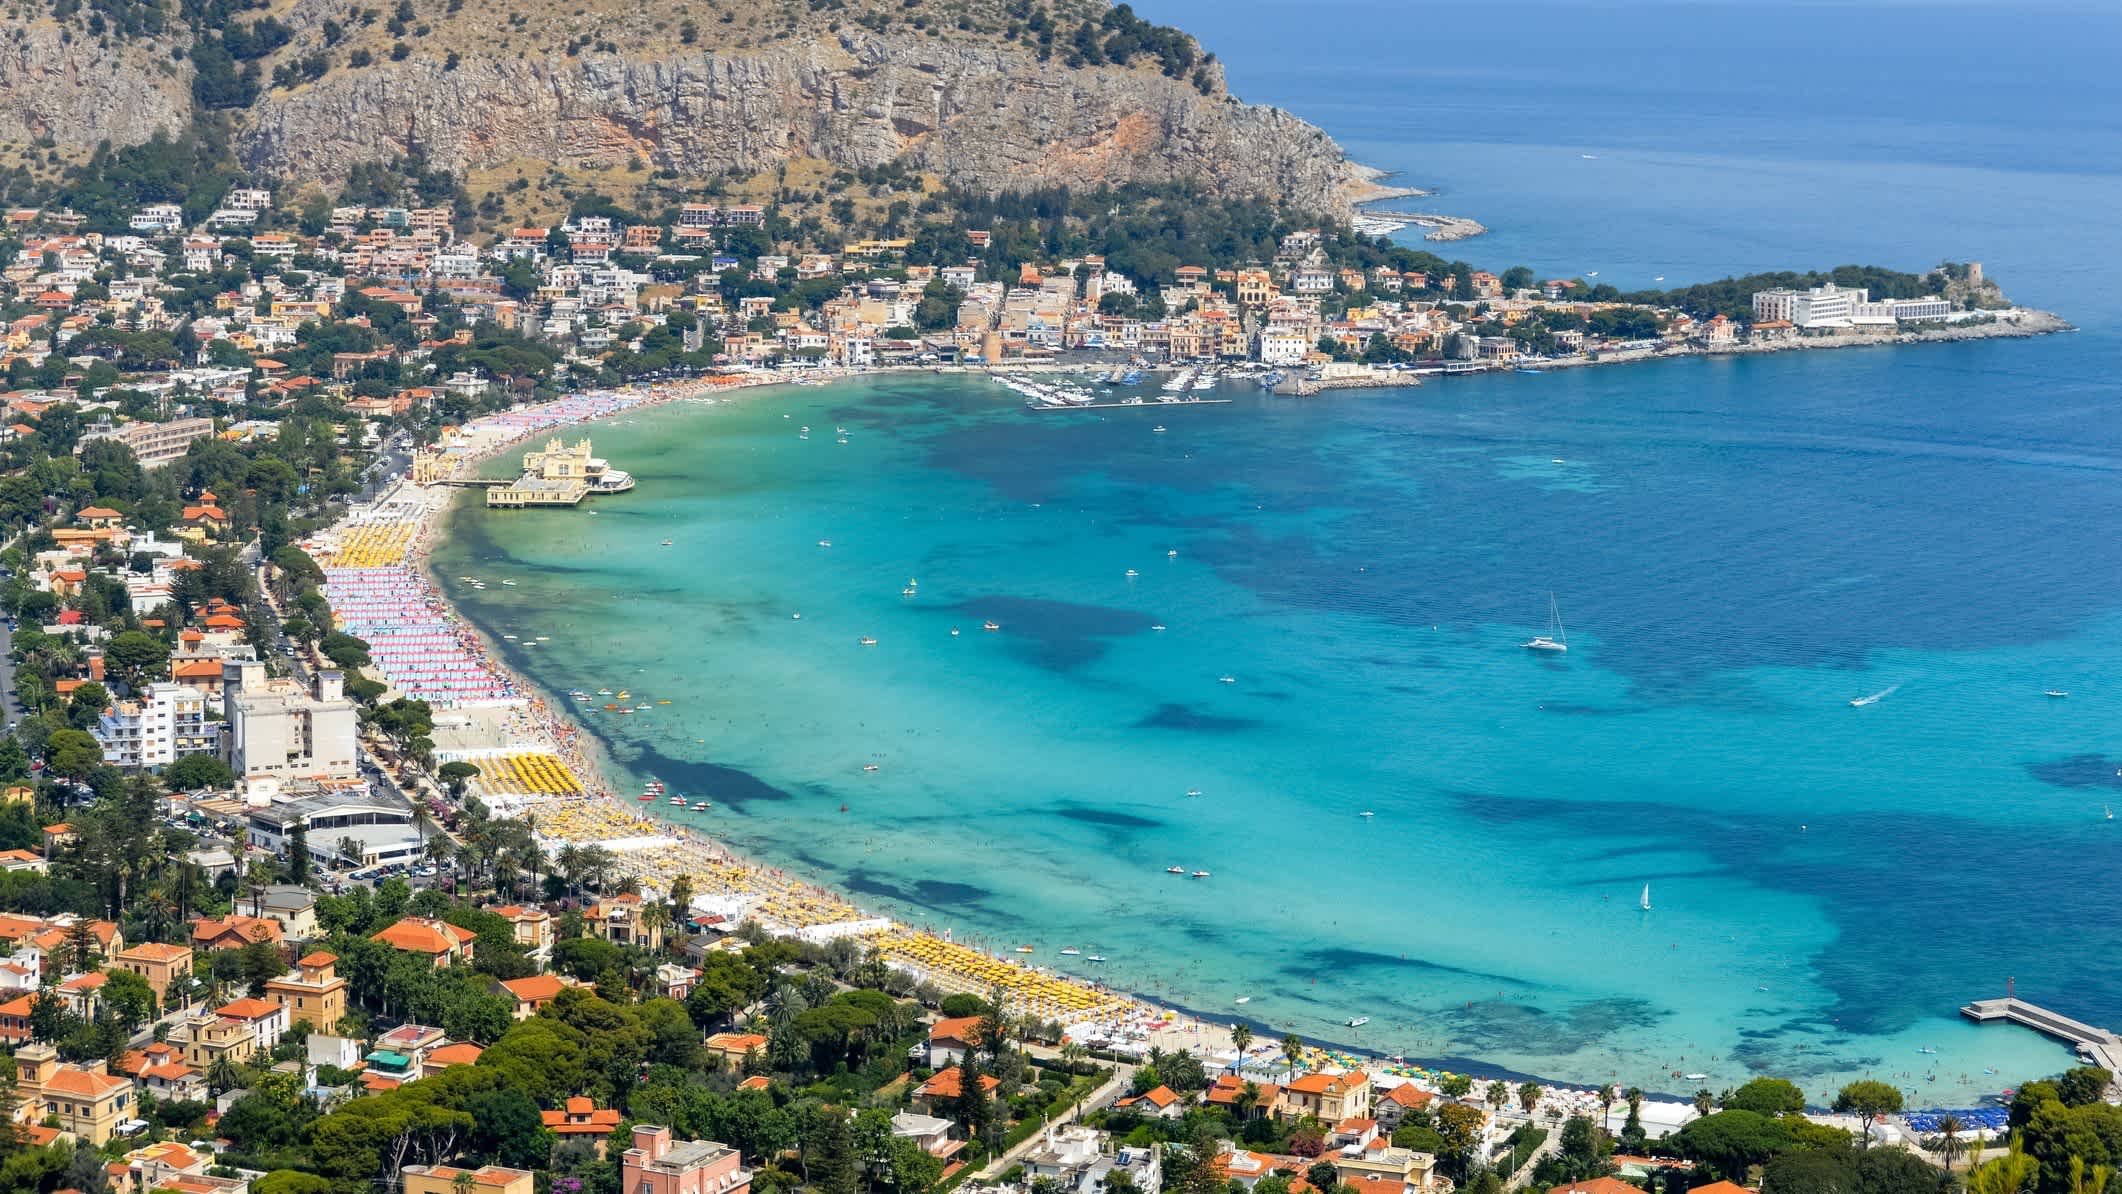 Panoramablick aus der Luft auf den Strand von Mondello in Palermo, Sizilien und die umliegende Stadt sowie das Gebirge.

